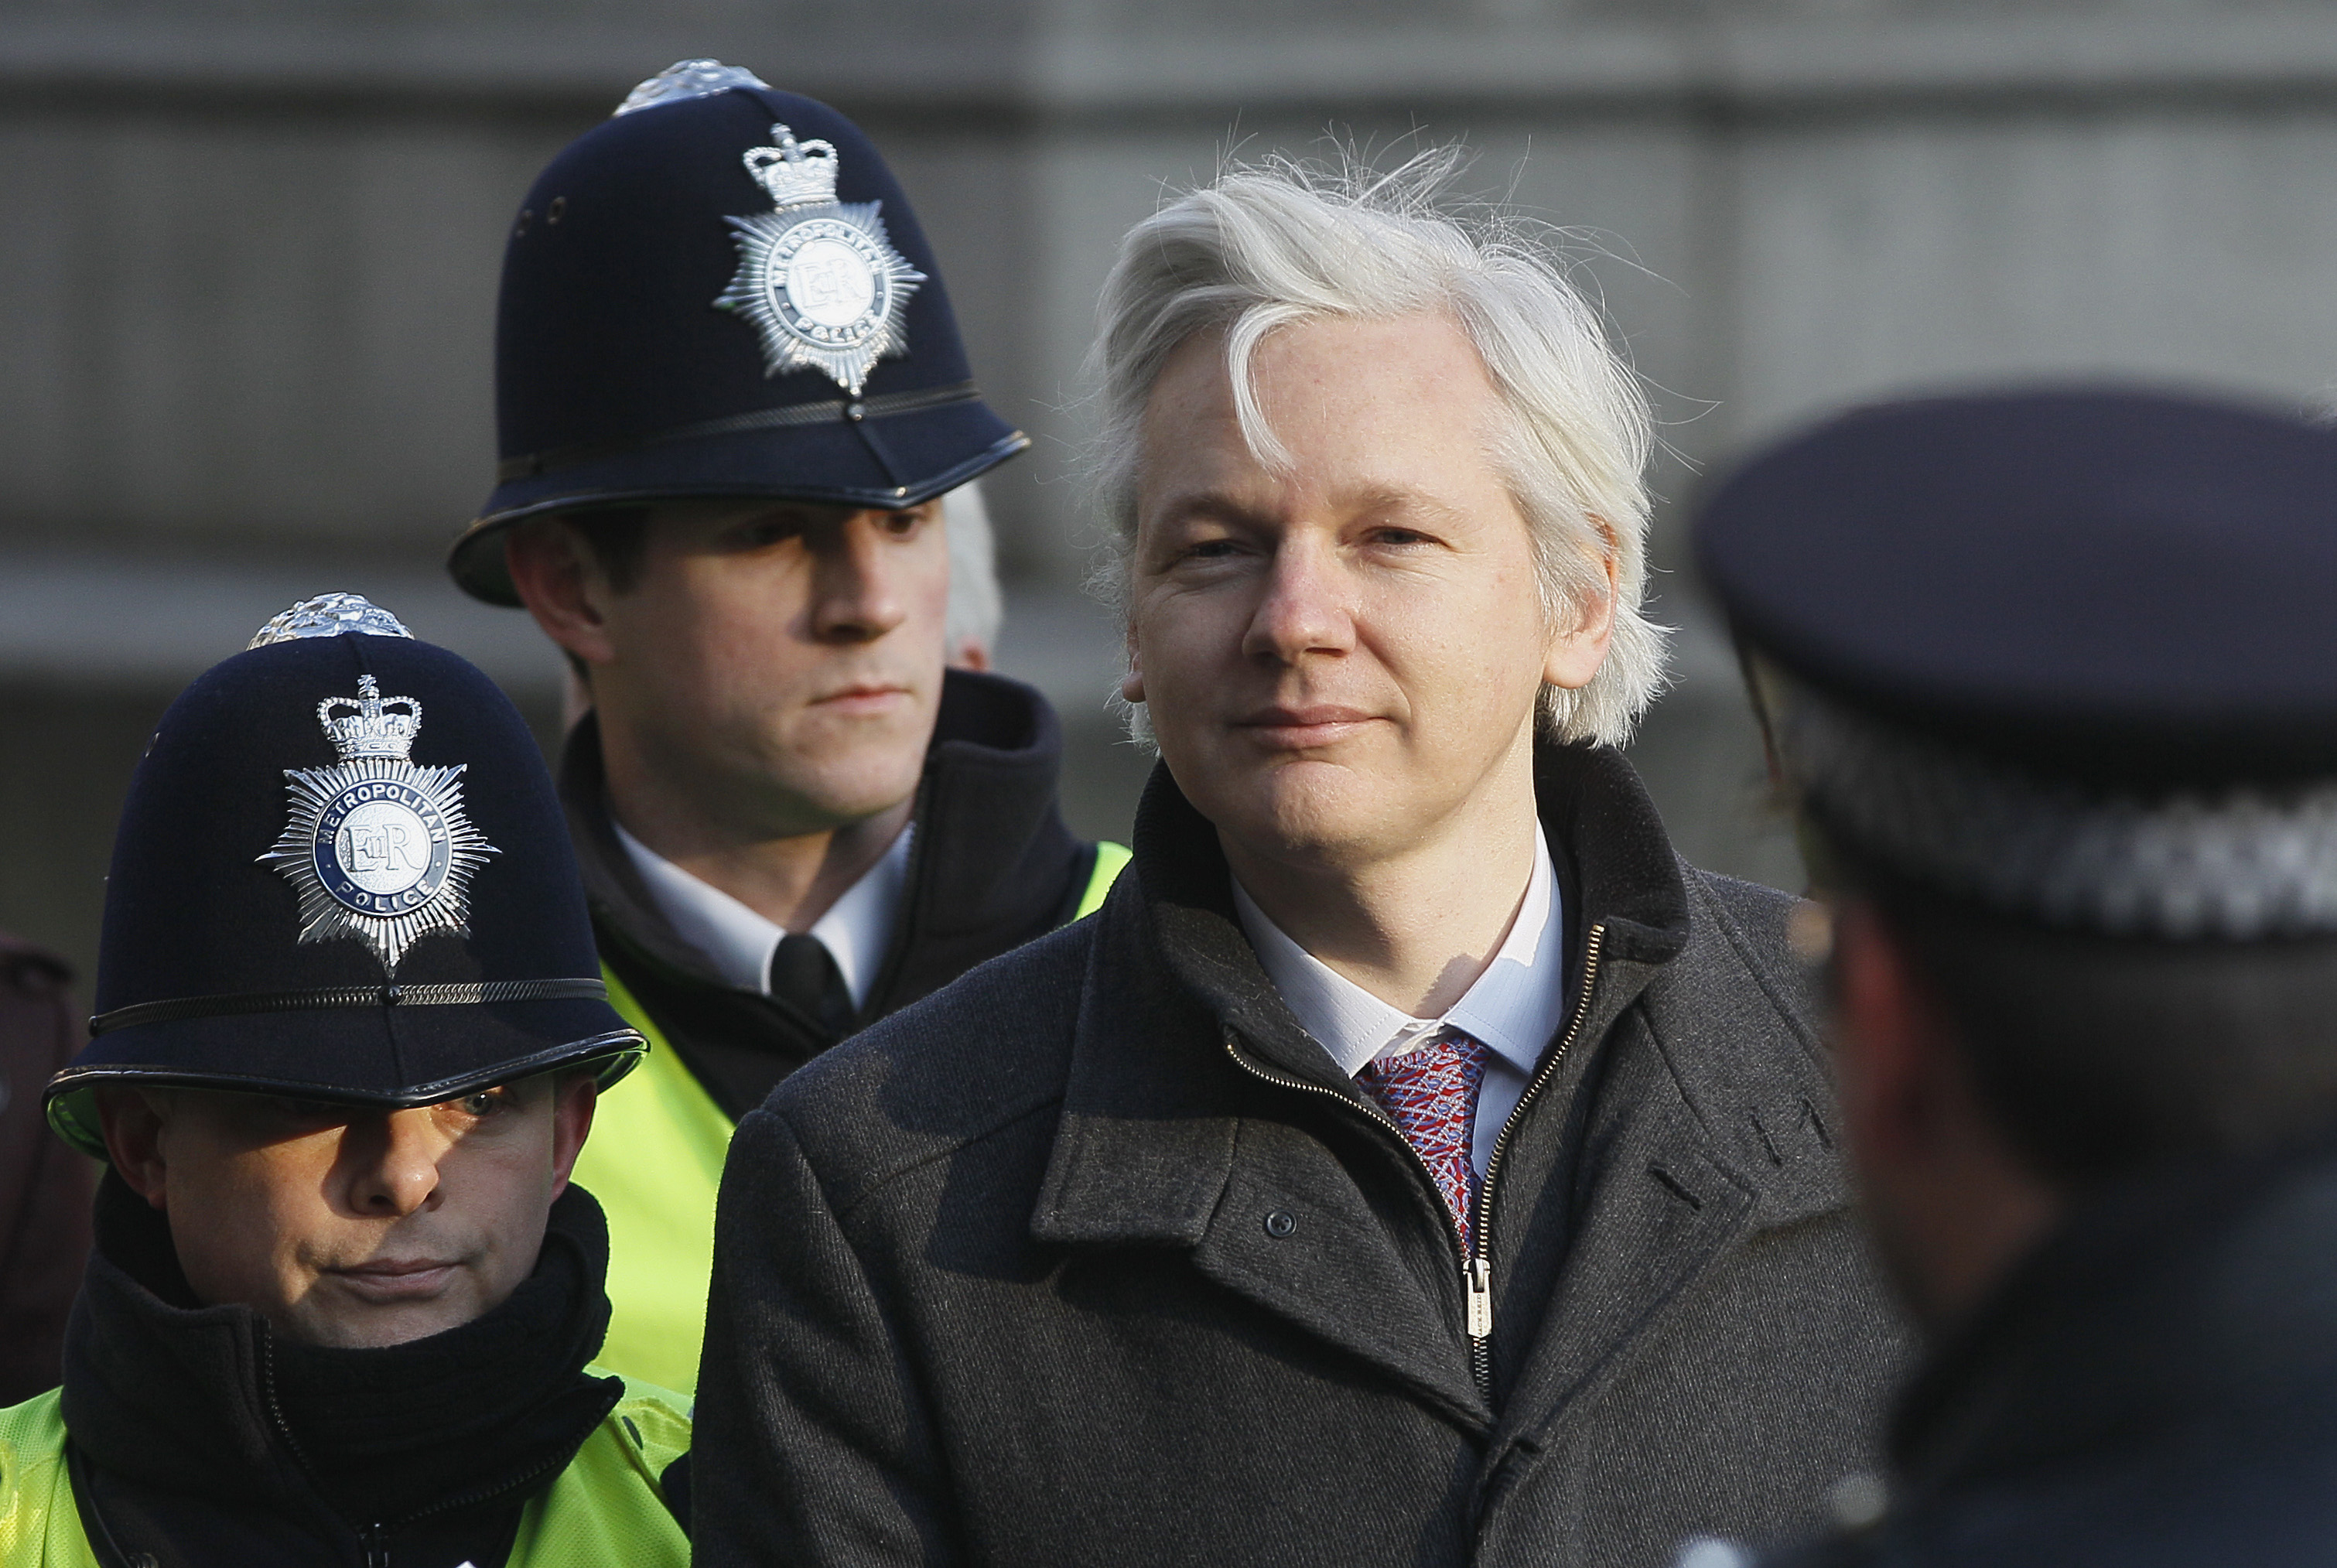 Om Högsta domstolen beslutar att Julian Assange ska utlämnas kommer han blir förd till Sverige av polis eftersom det är osannolikt att han kommer frivilligt.